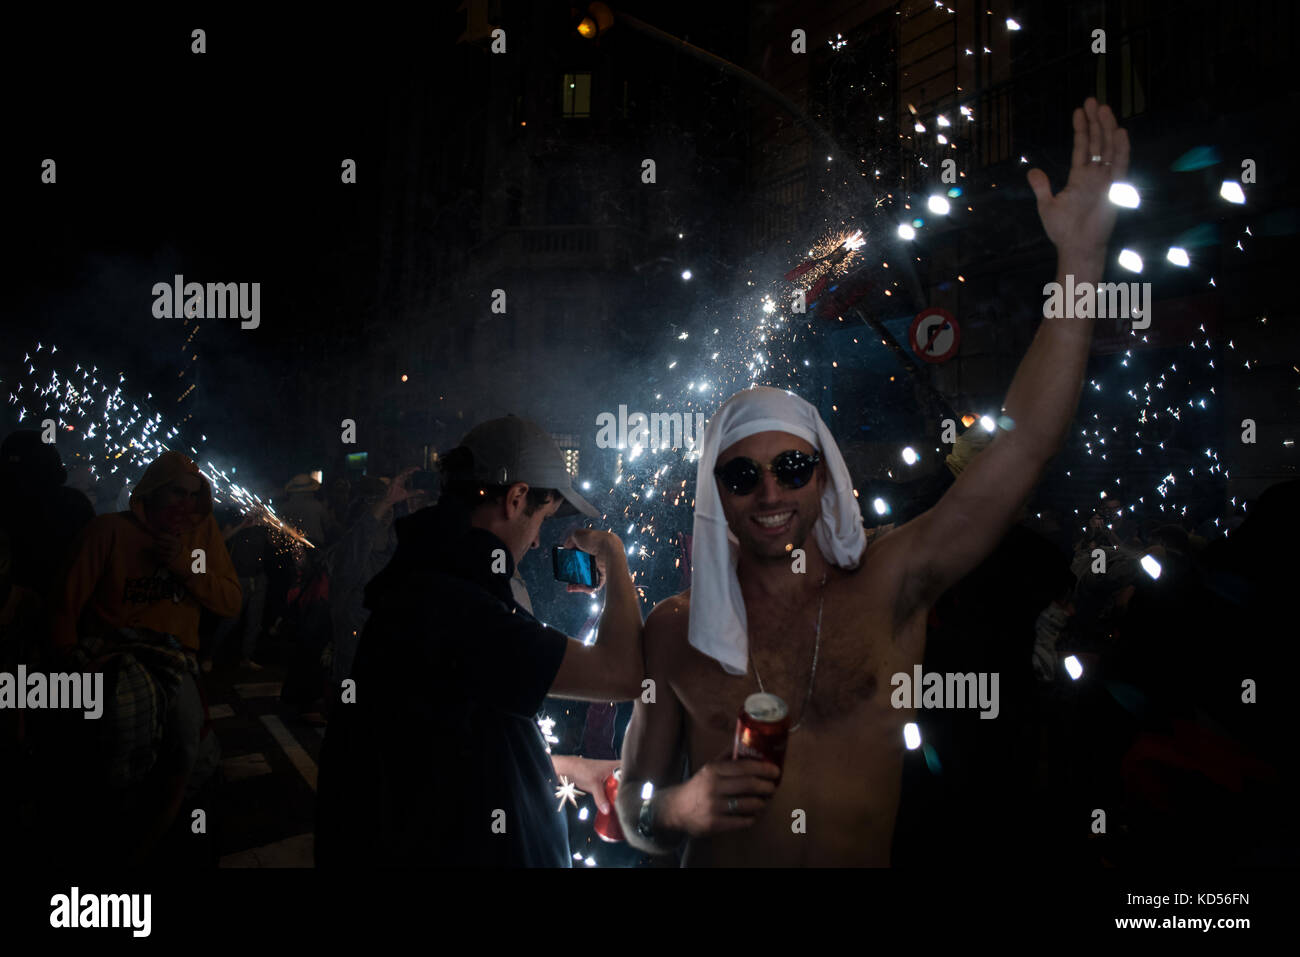 Die Leute haben Spaß im Correfocs de la Merce. Die Partei besteht aus der Flucht vor den Dämonen (Diables), die Funken werfen. Alamy / Carles Desfilis Stockfoto